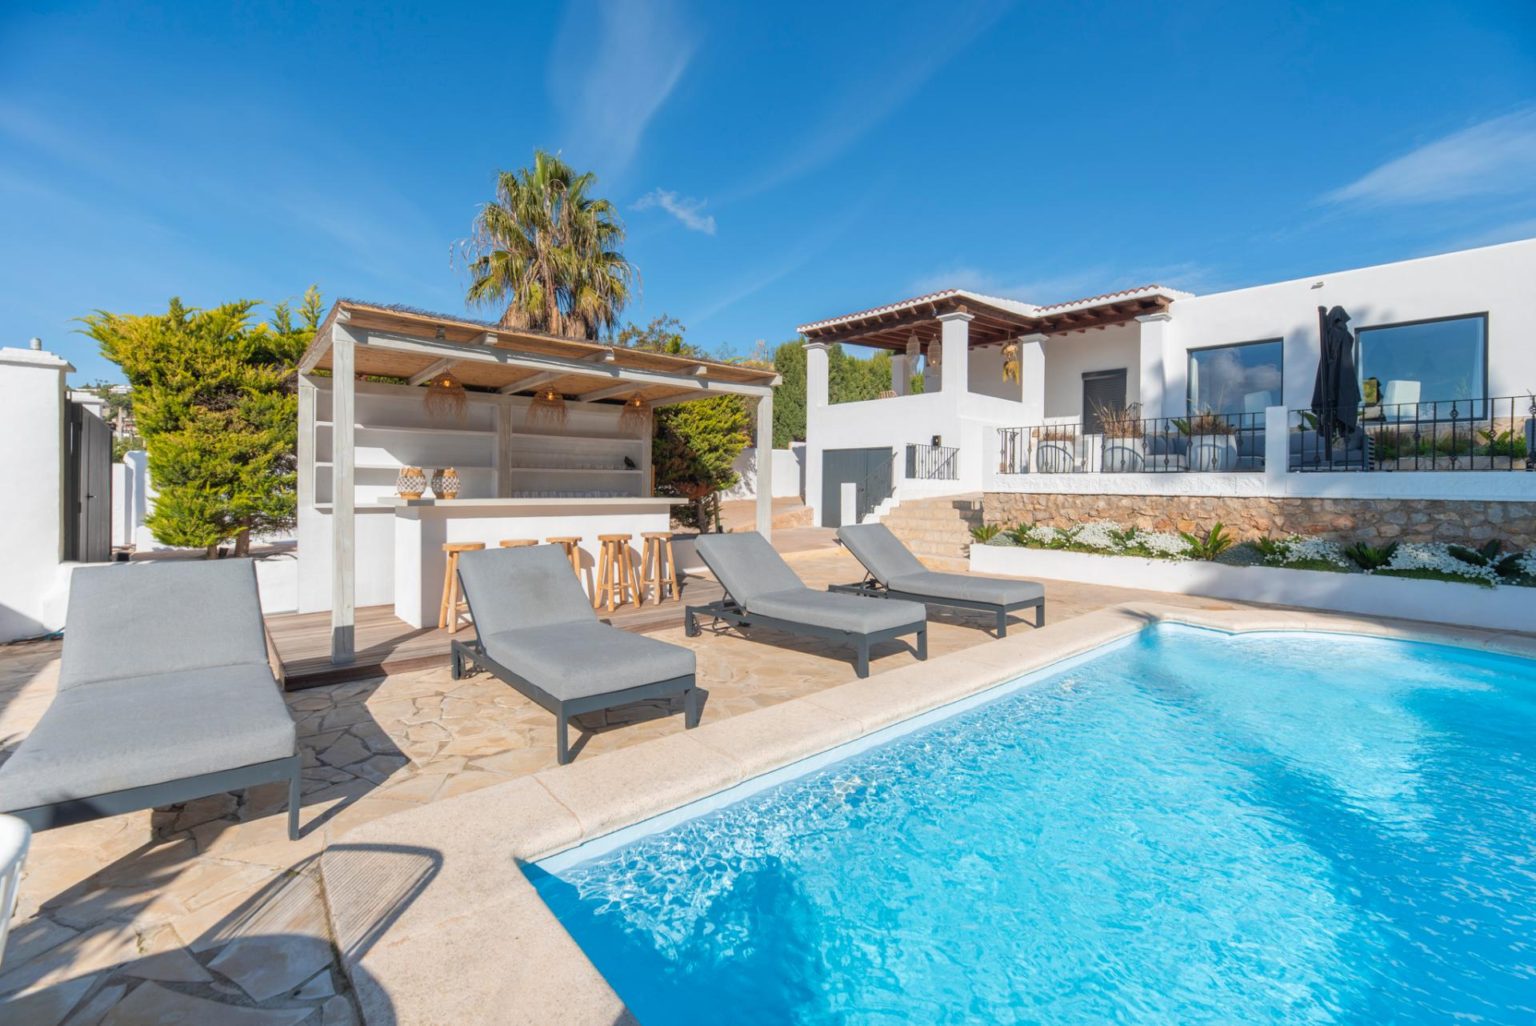 Komfortable Villa mit Bergblick in der Nähe von Ibiza-Stadt